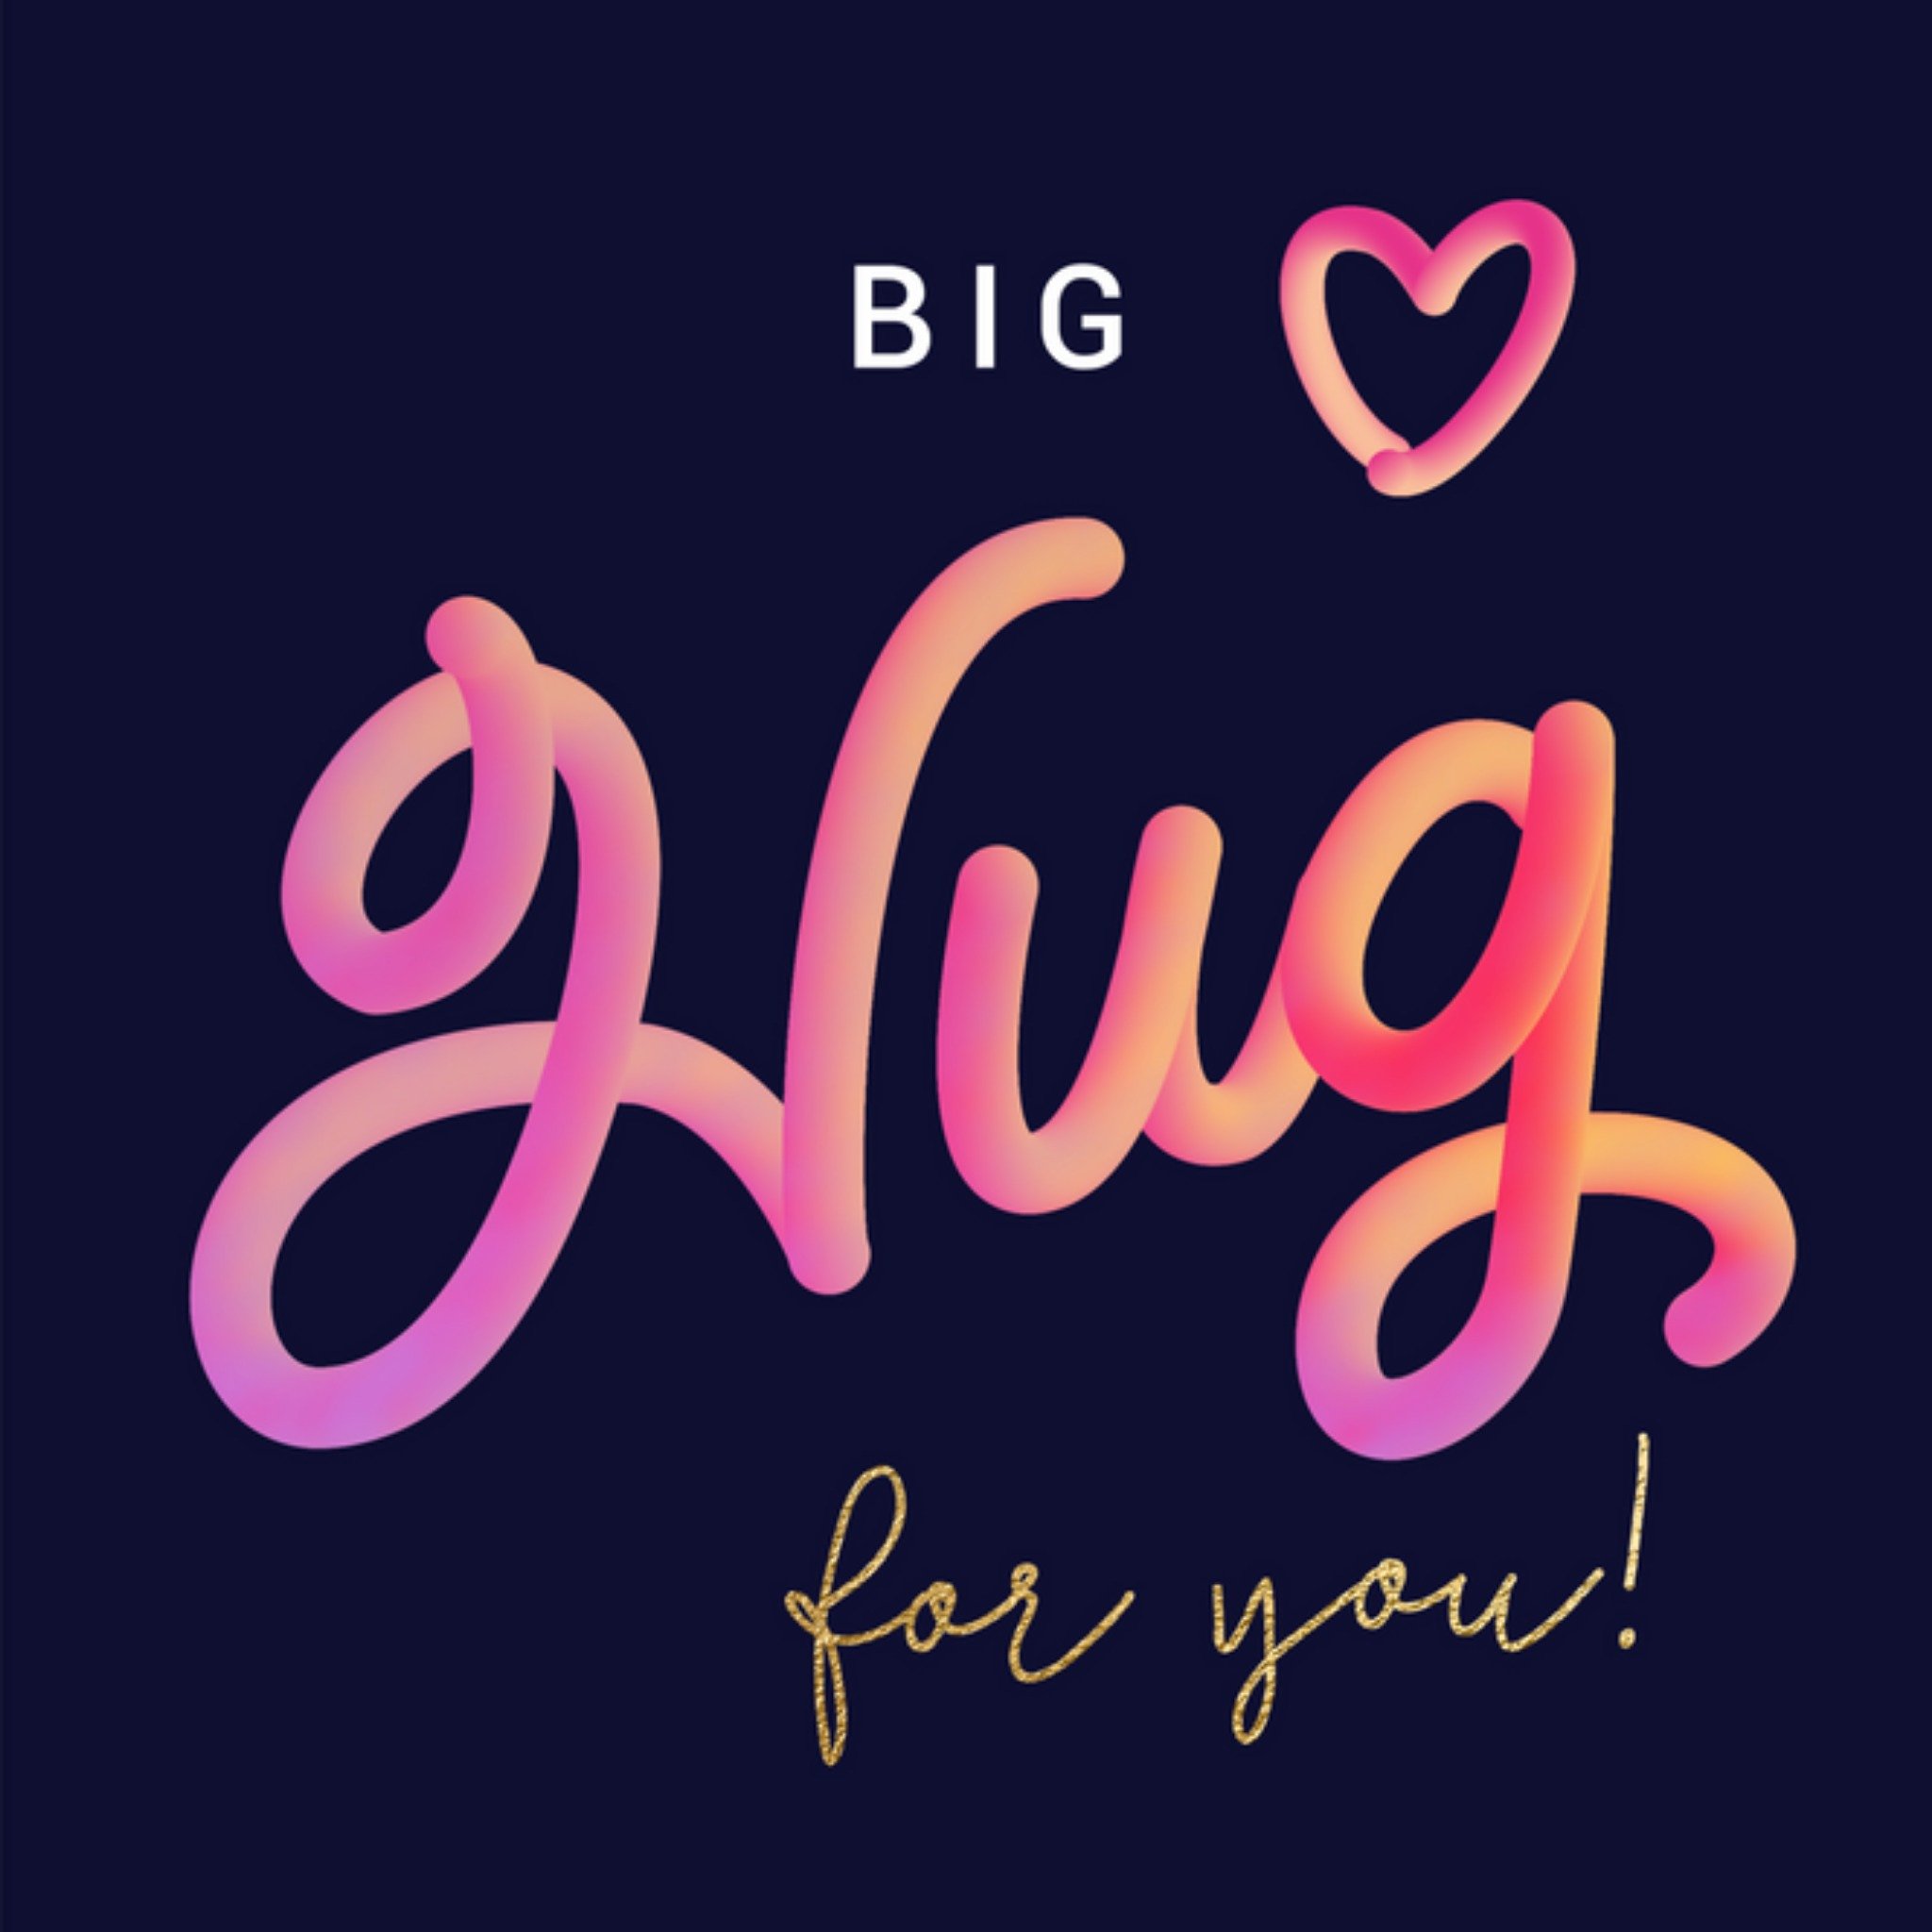 Luckz - Denken aan - Big hug for you!